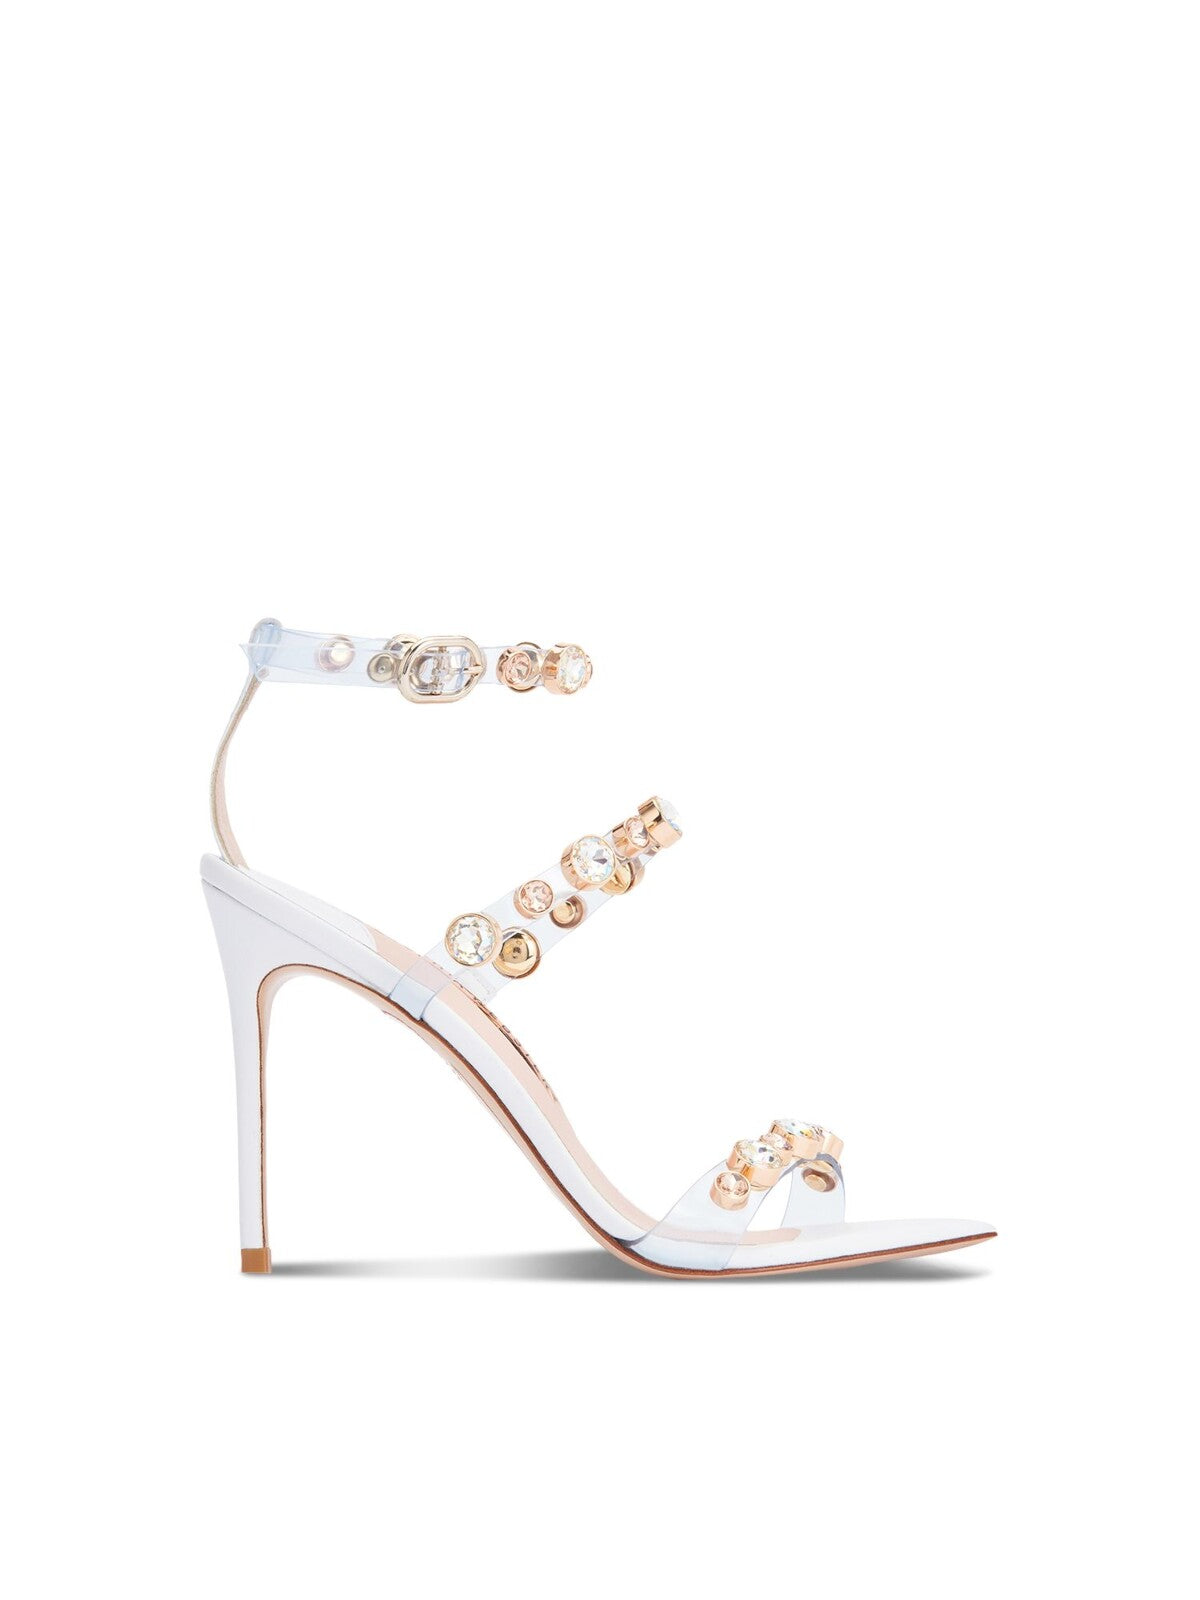 SOPHIA WEBSTER Womens White Embellished Adjustable Rosalind Square Toe Stiletto Buckle Dress Heels Shoes 38